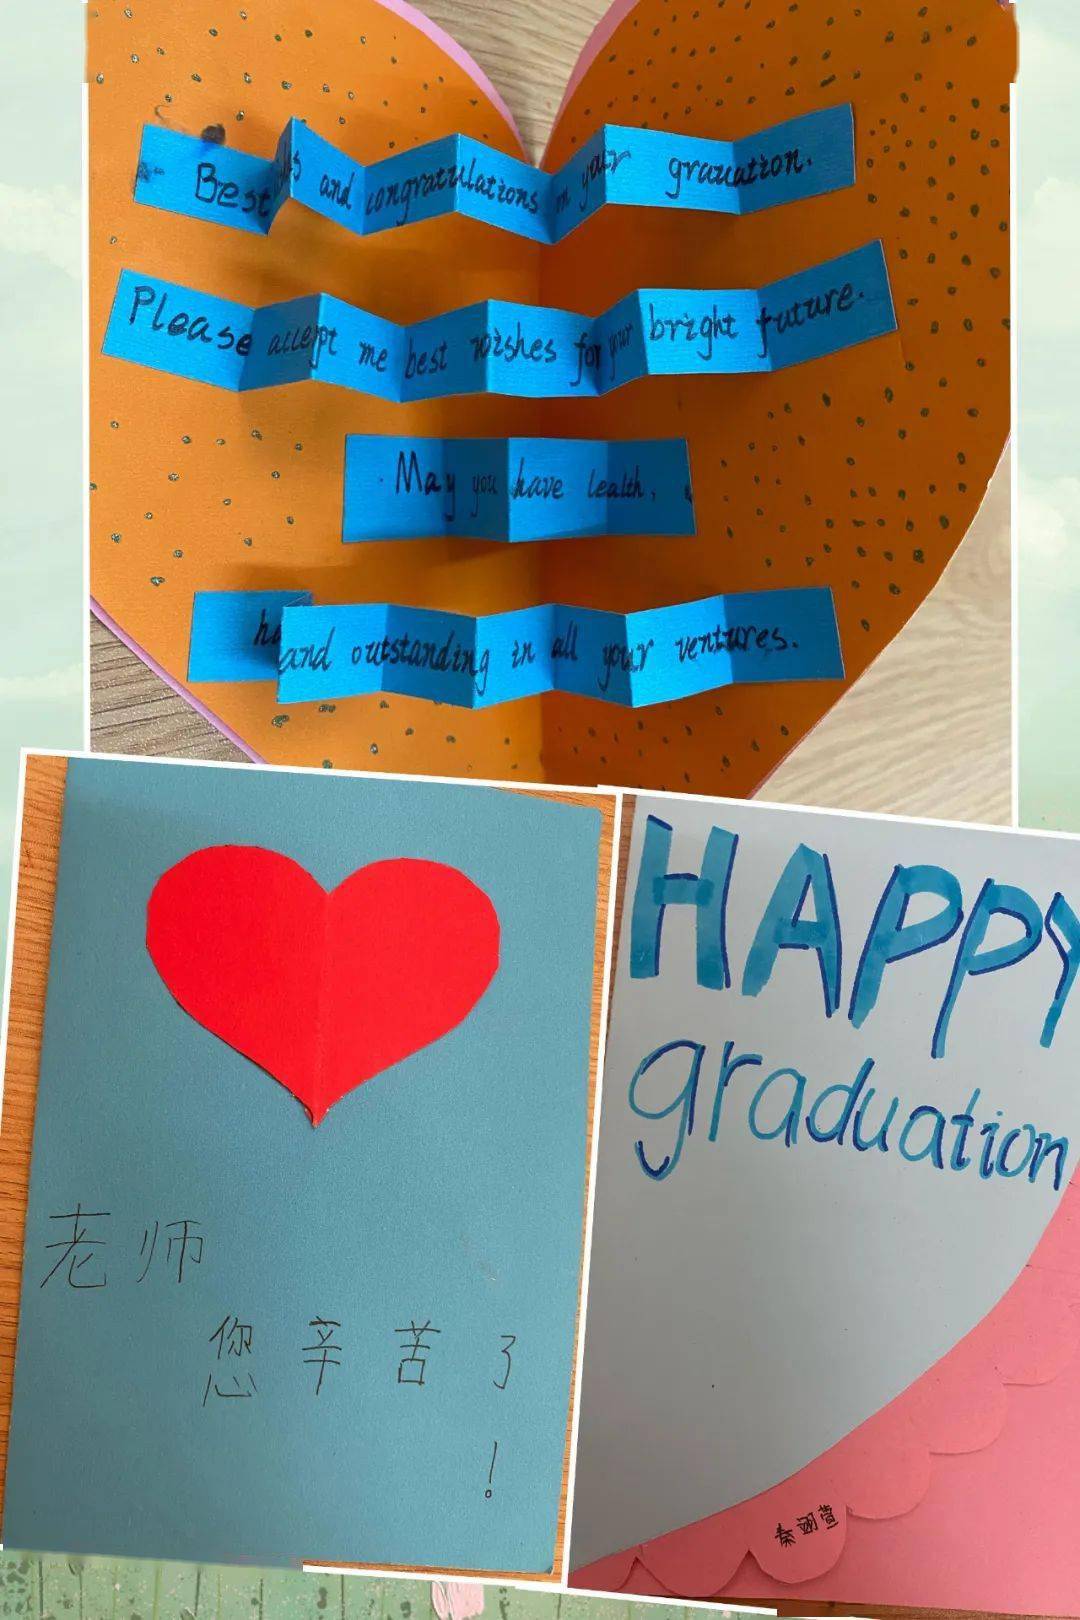 桂林市穿山小学2014级毕业季课程—英语毕业赠言卡